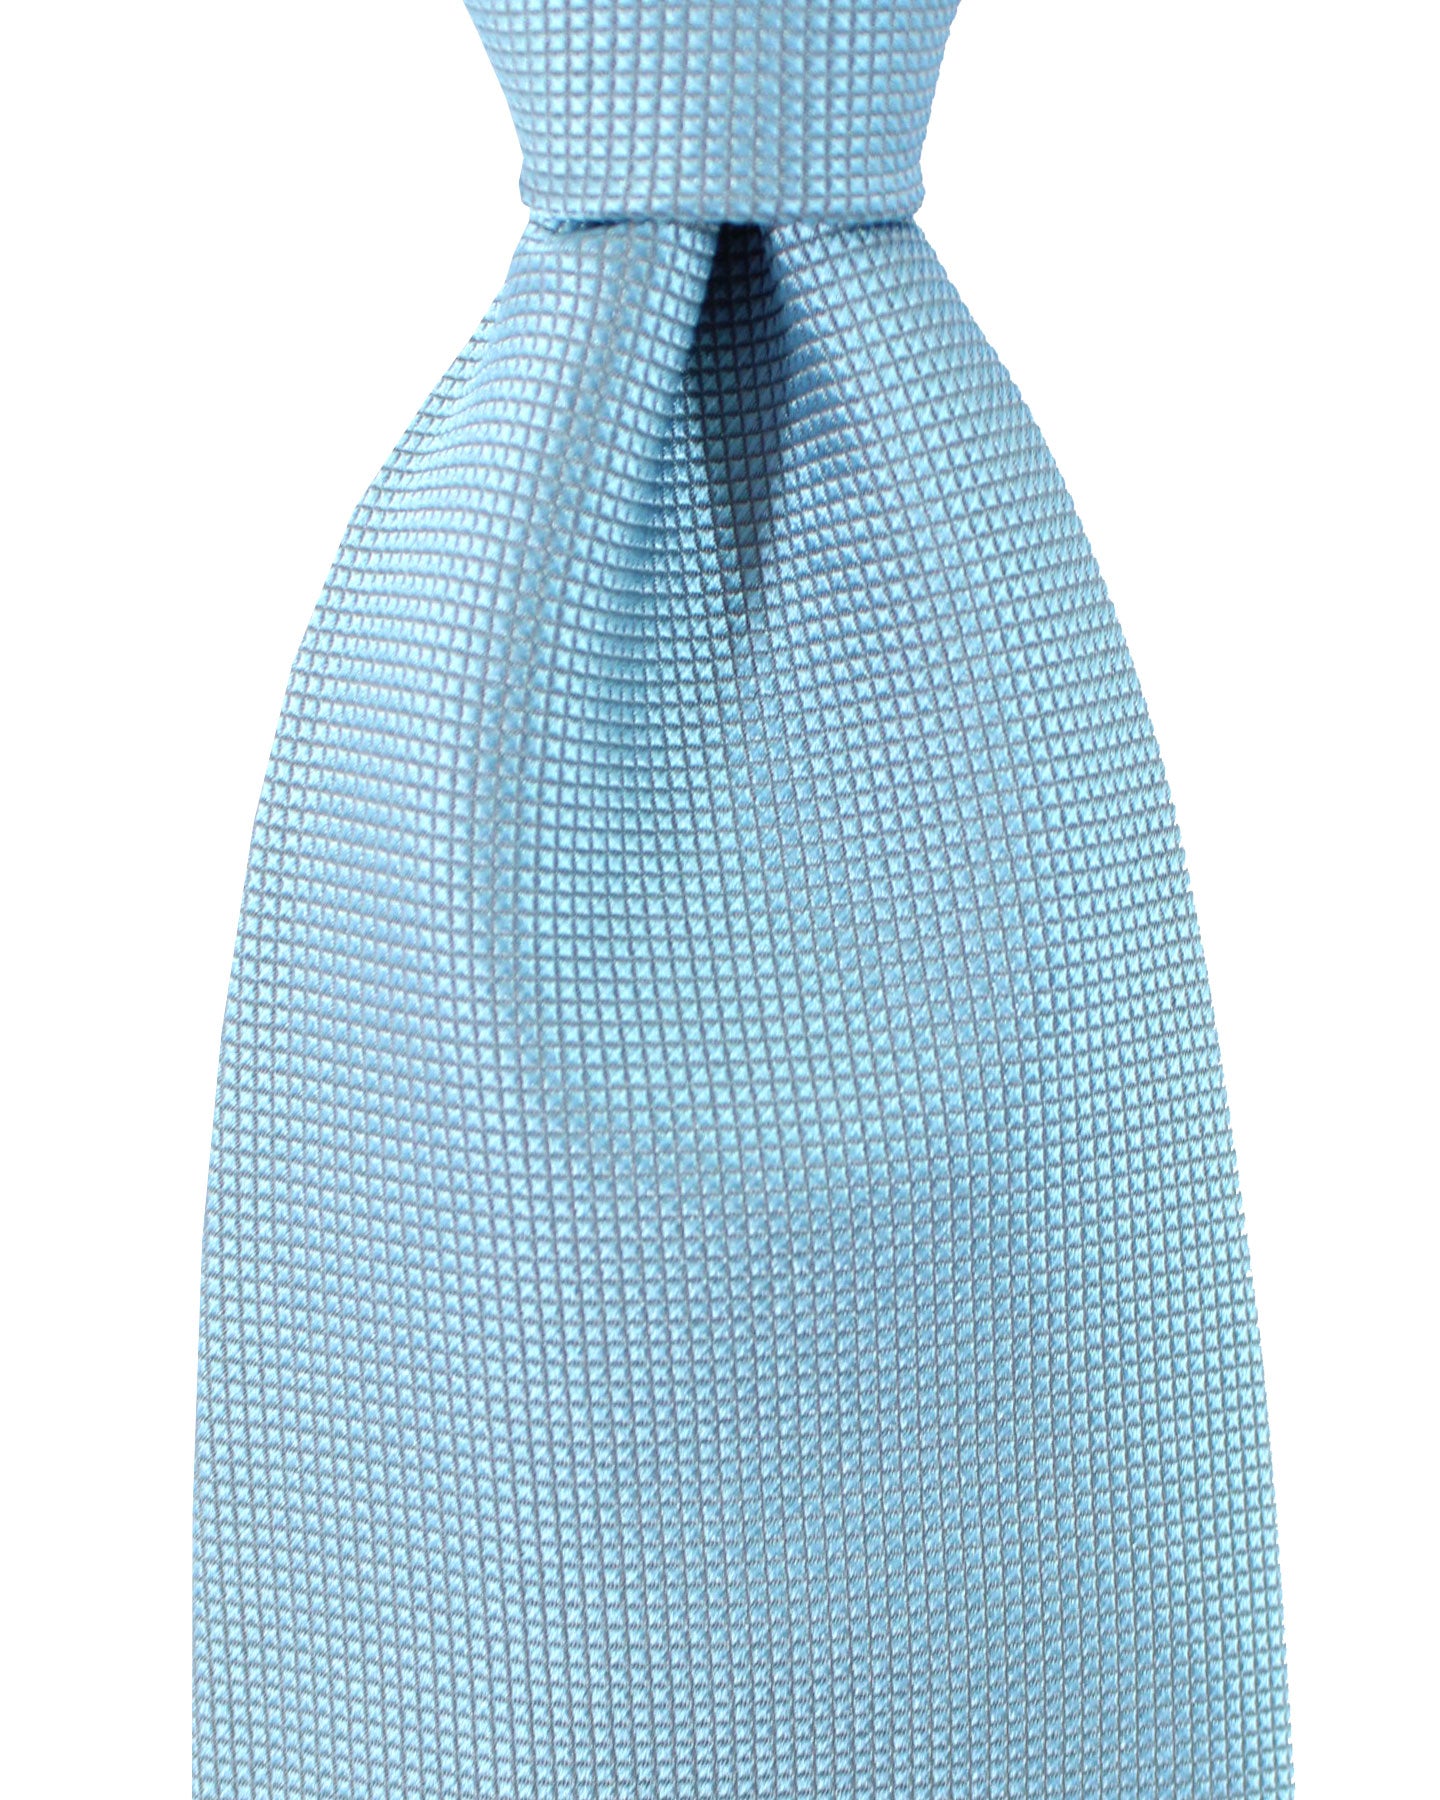 Zilli Silk Tie Powder Blue Micro Check Design - Wide Necktie